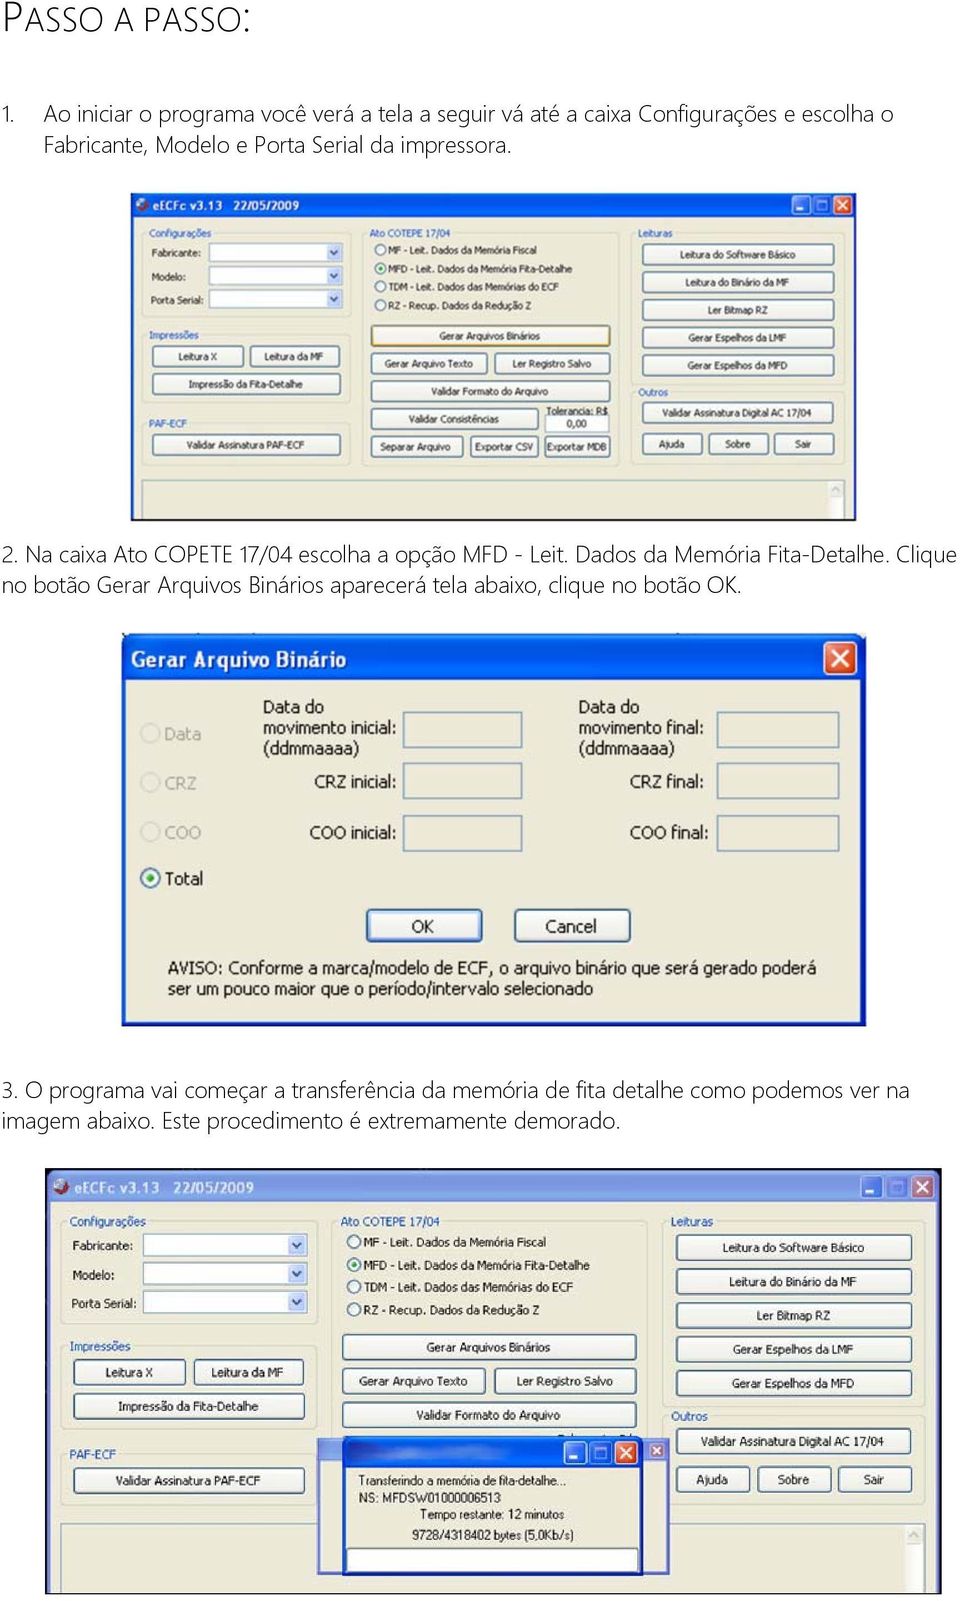 Serial da impressora. 2. Na caixa Ato COPETE 17/04 escolha a opção MFD - Leit. Dados da Memória Fita-Detalhe.